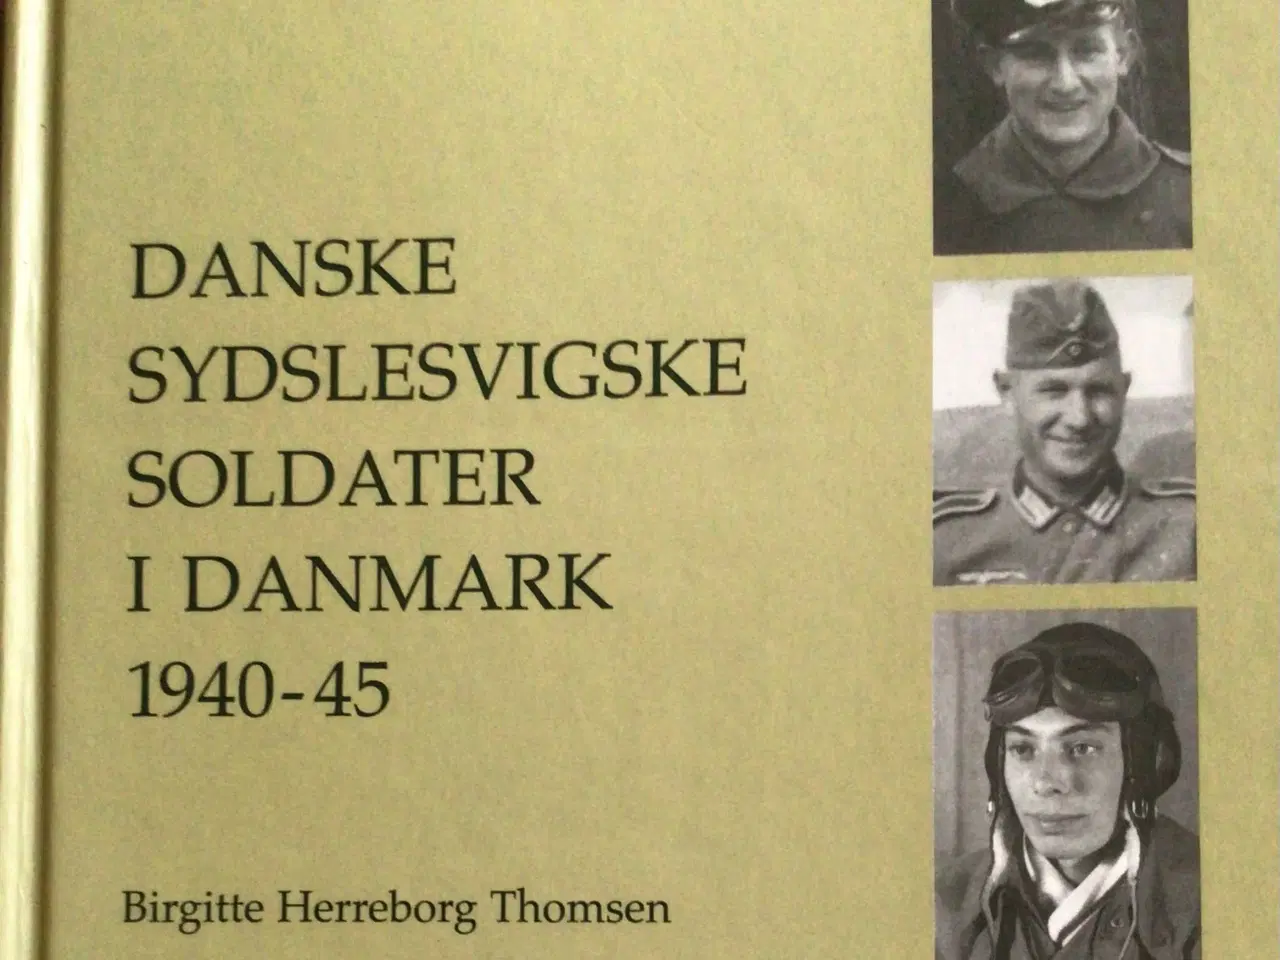 Billede 1 - Danske sydslesvigske soldater i Danmark 1940-45